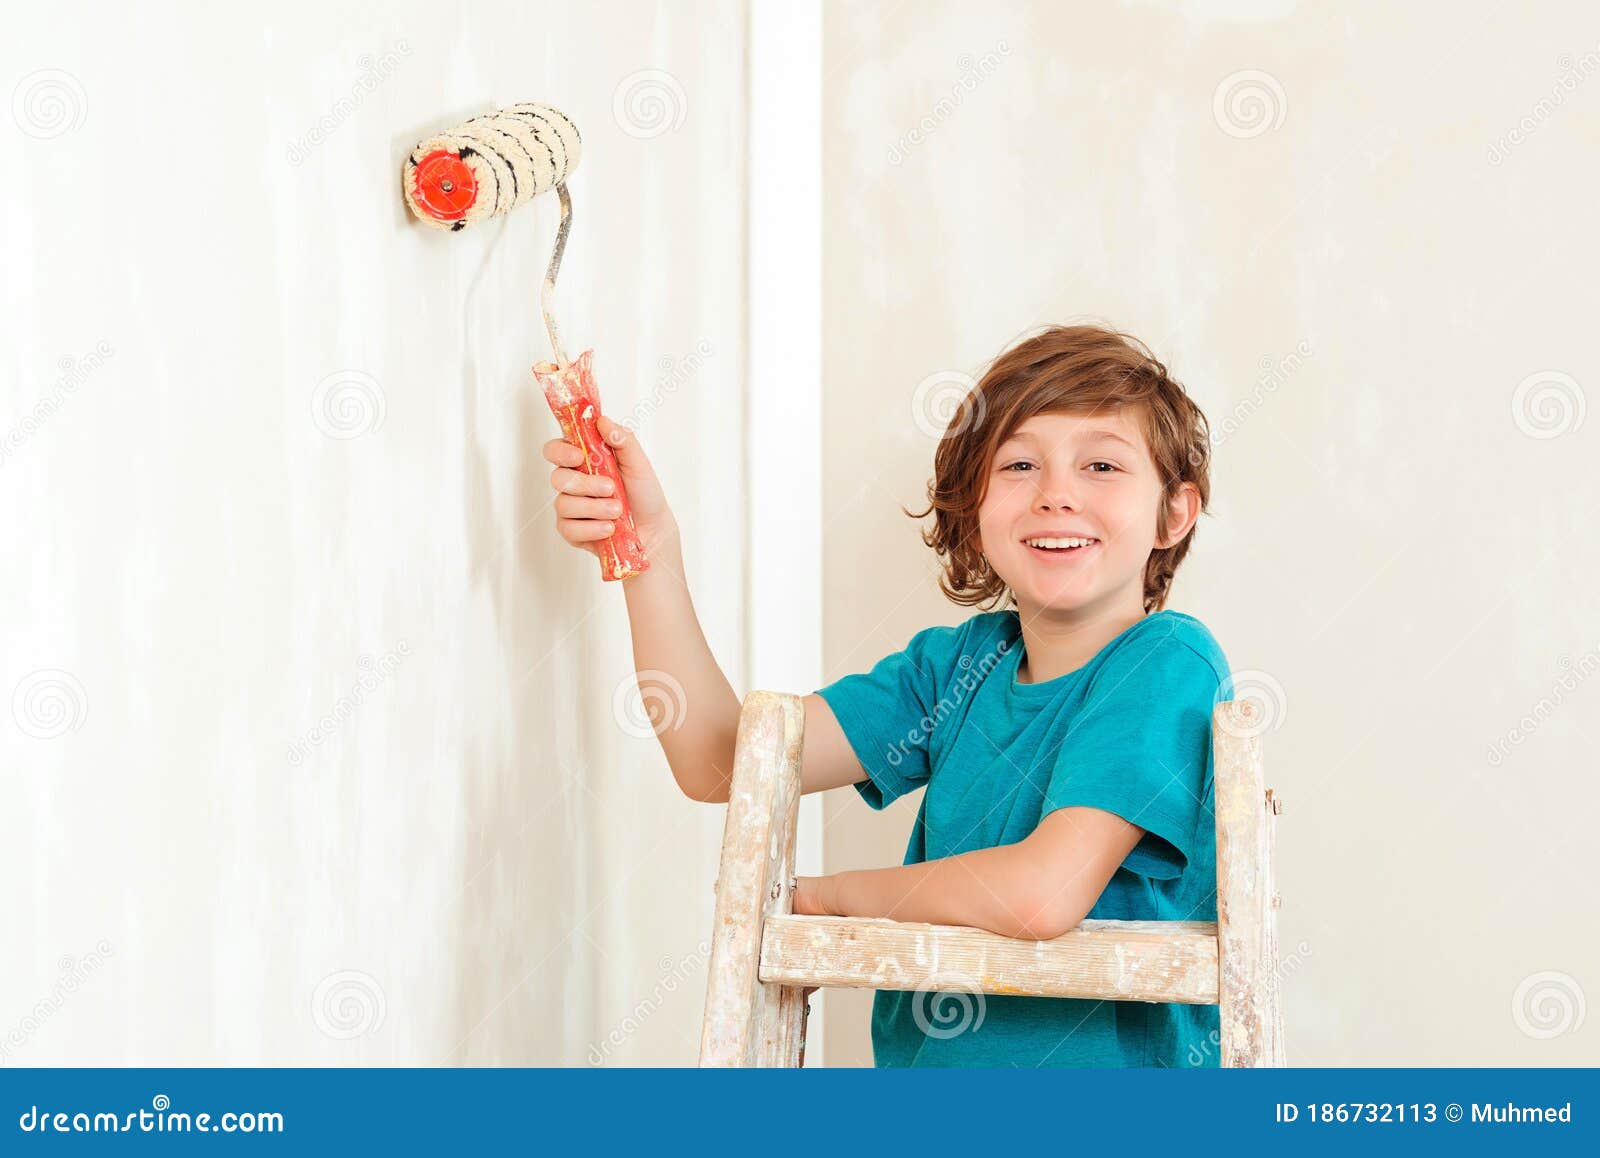 Ребенок красит стену валиком